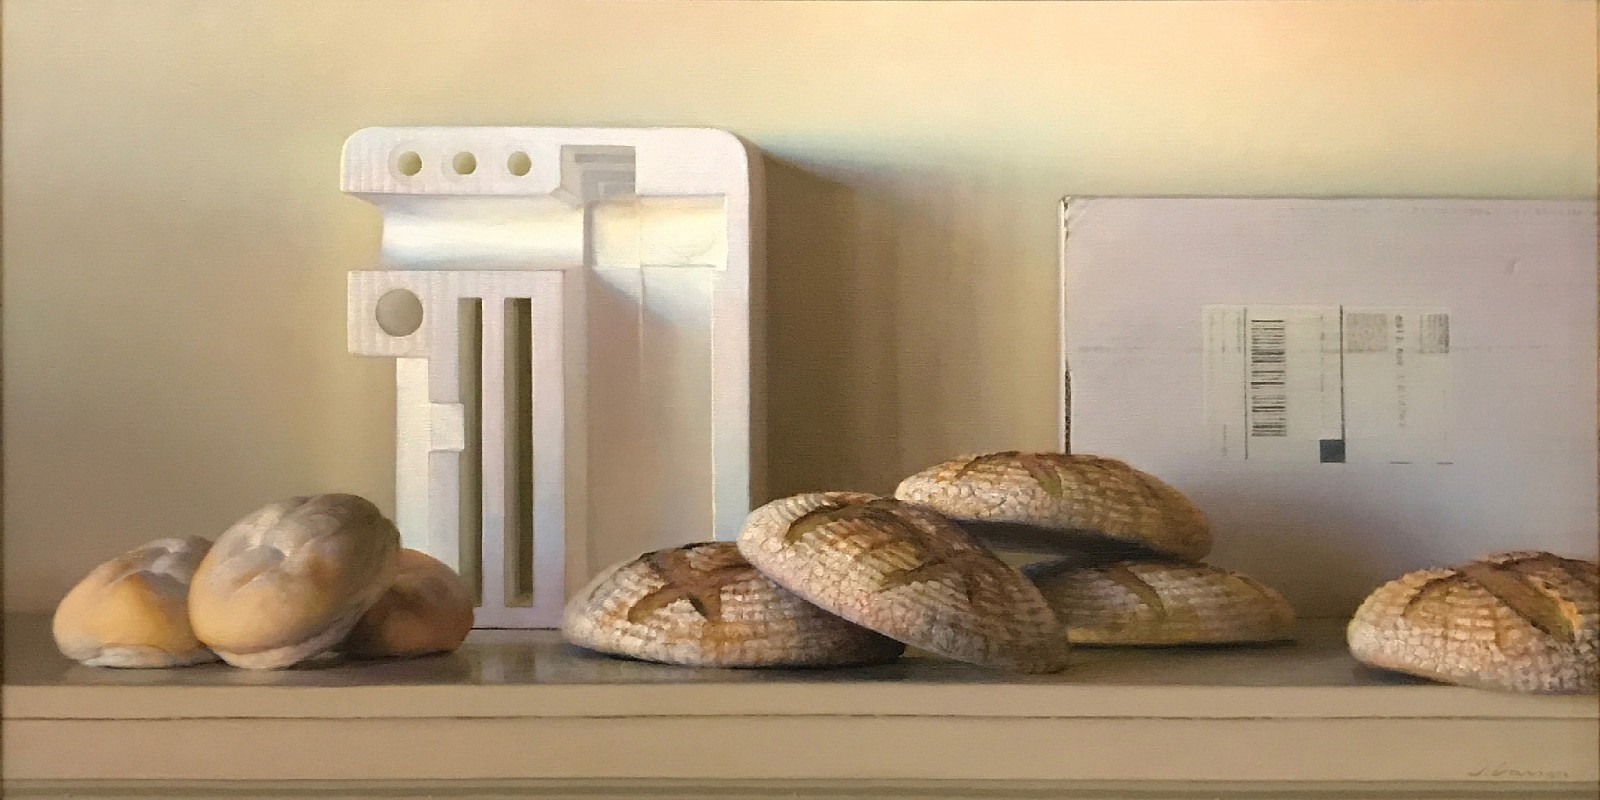 Jeffrey T. Larson, Bread & Styrofoam, 2010
oil on canvas, 20 x 40 in. (50.8 x 101.6 cm)
JL1803002